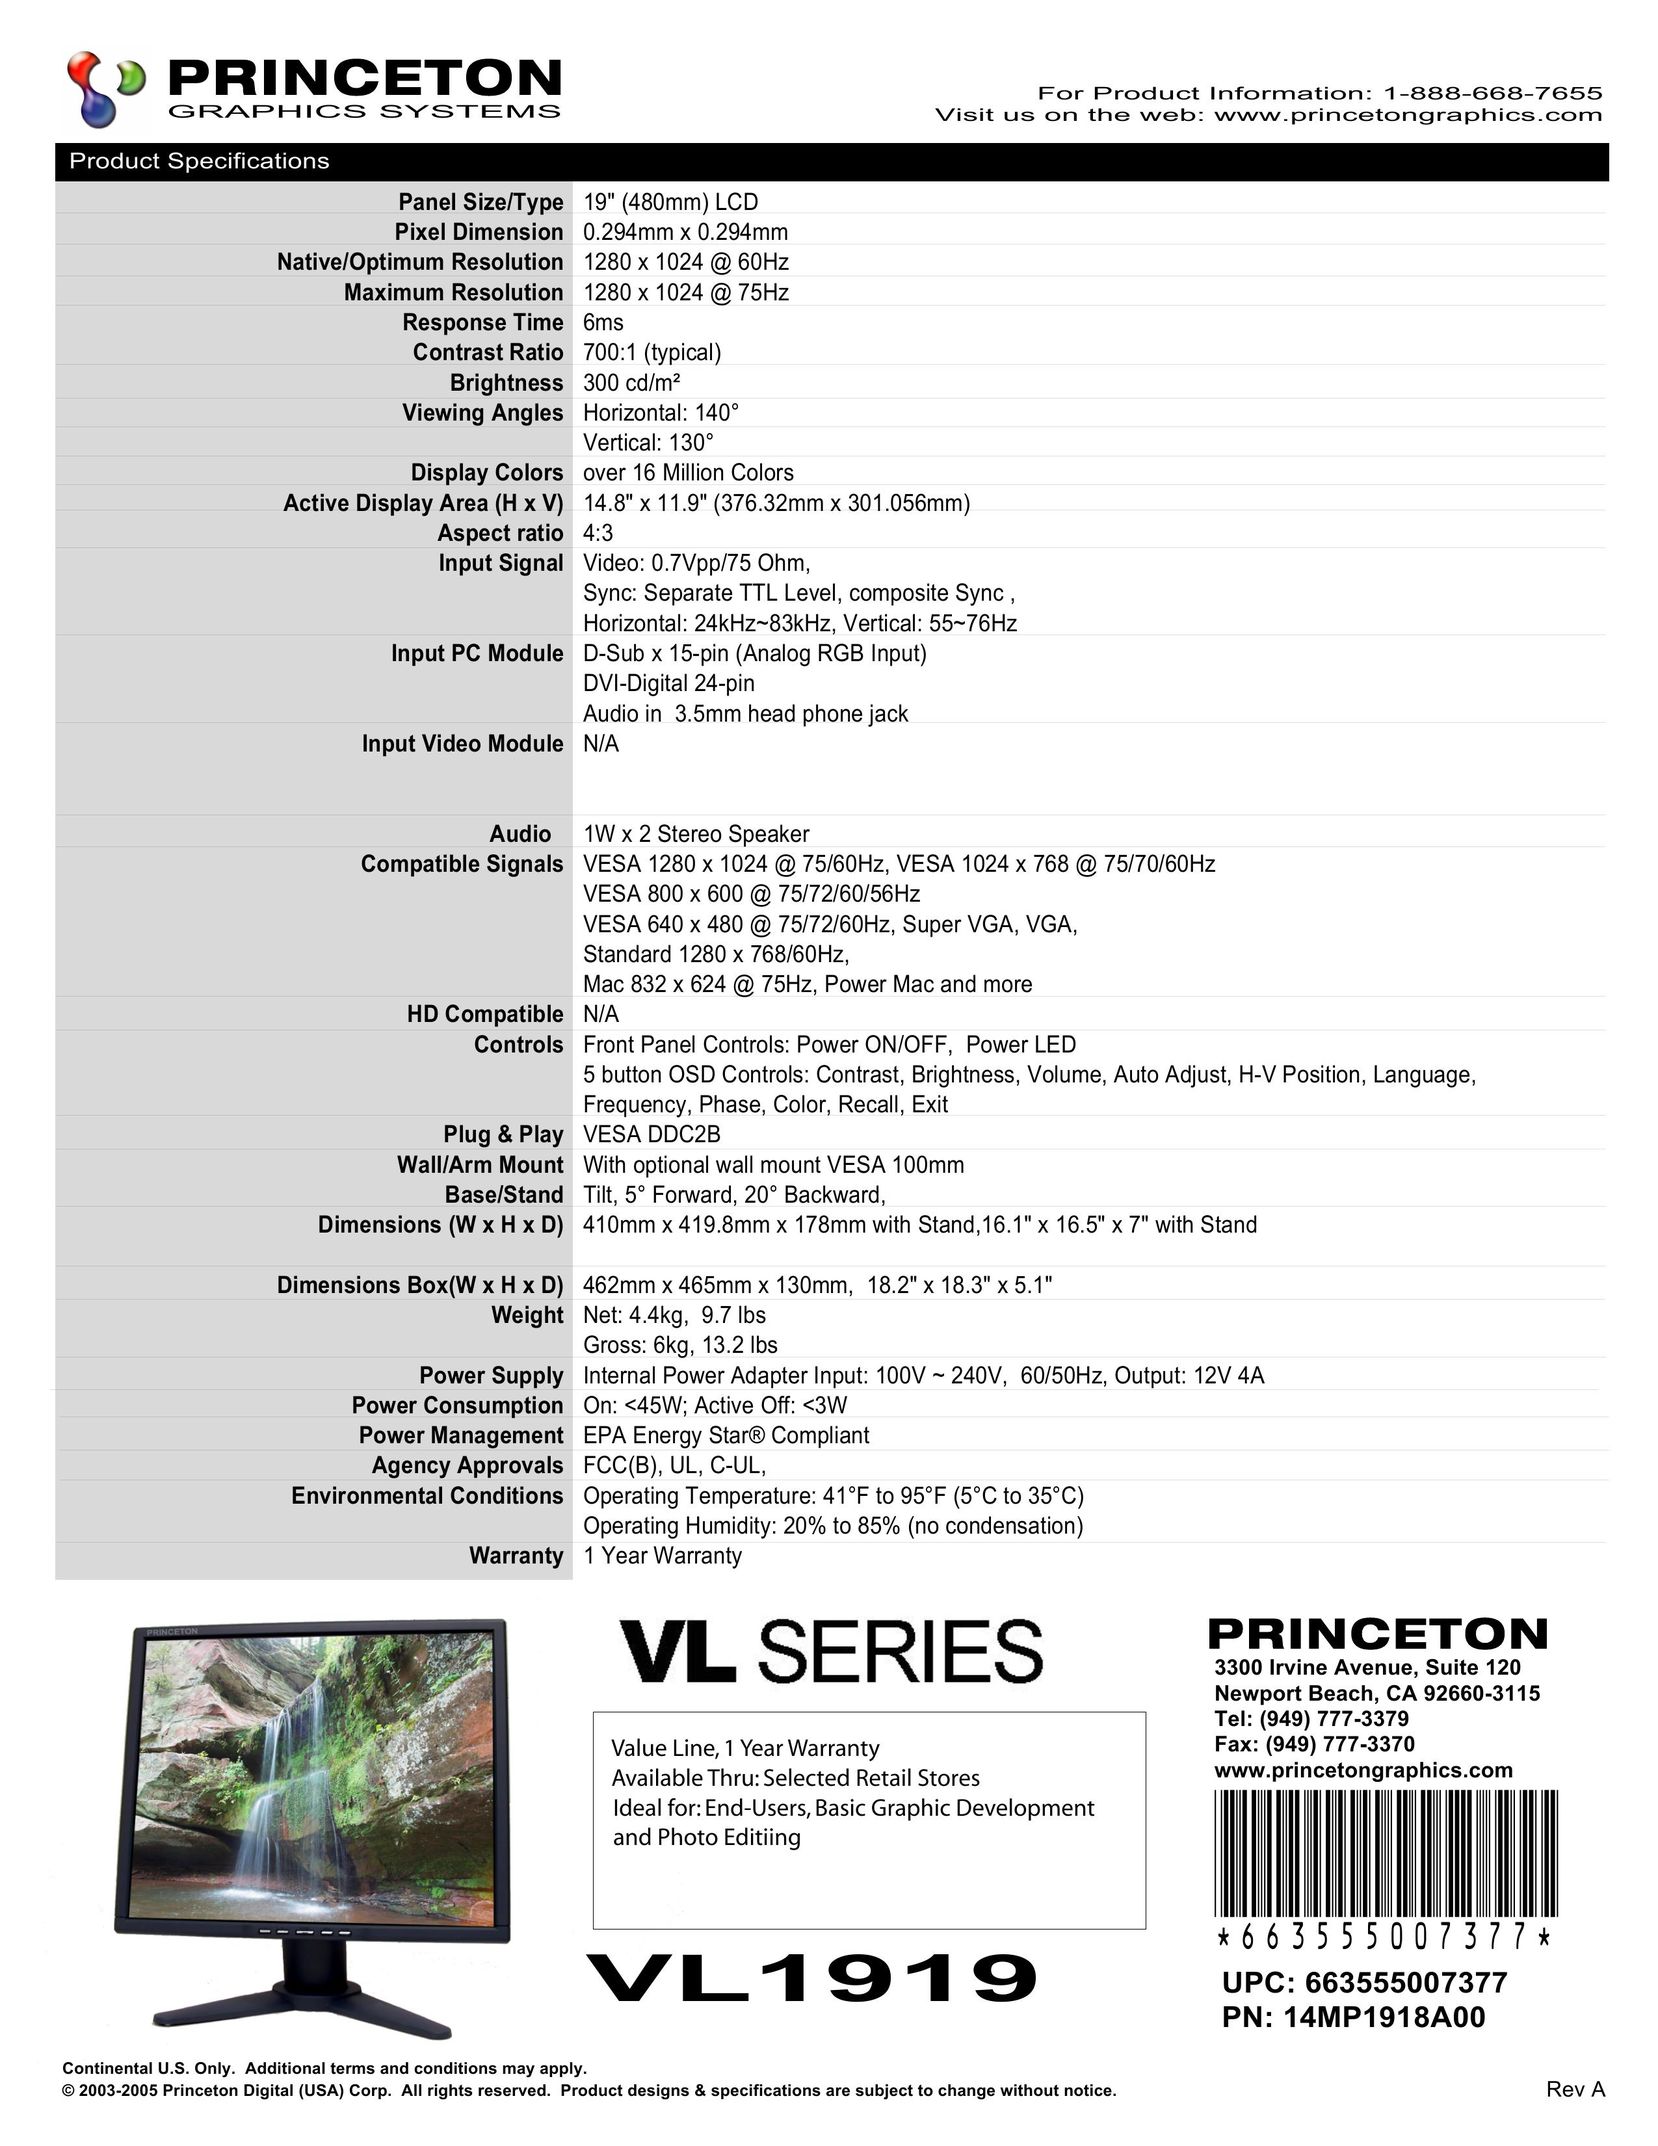 Princeton VL1919 Flat Panel Television User Manual